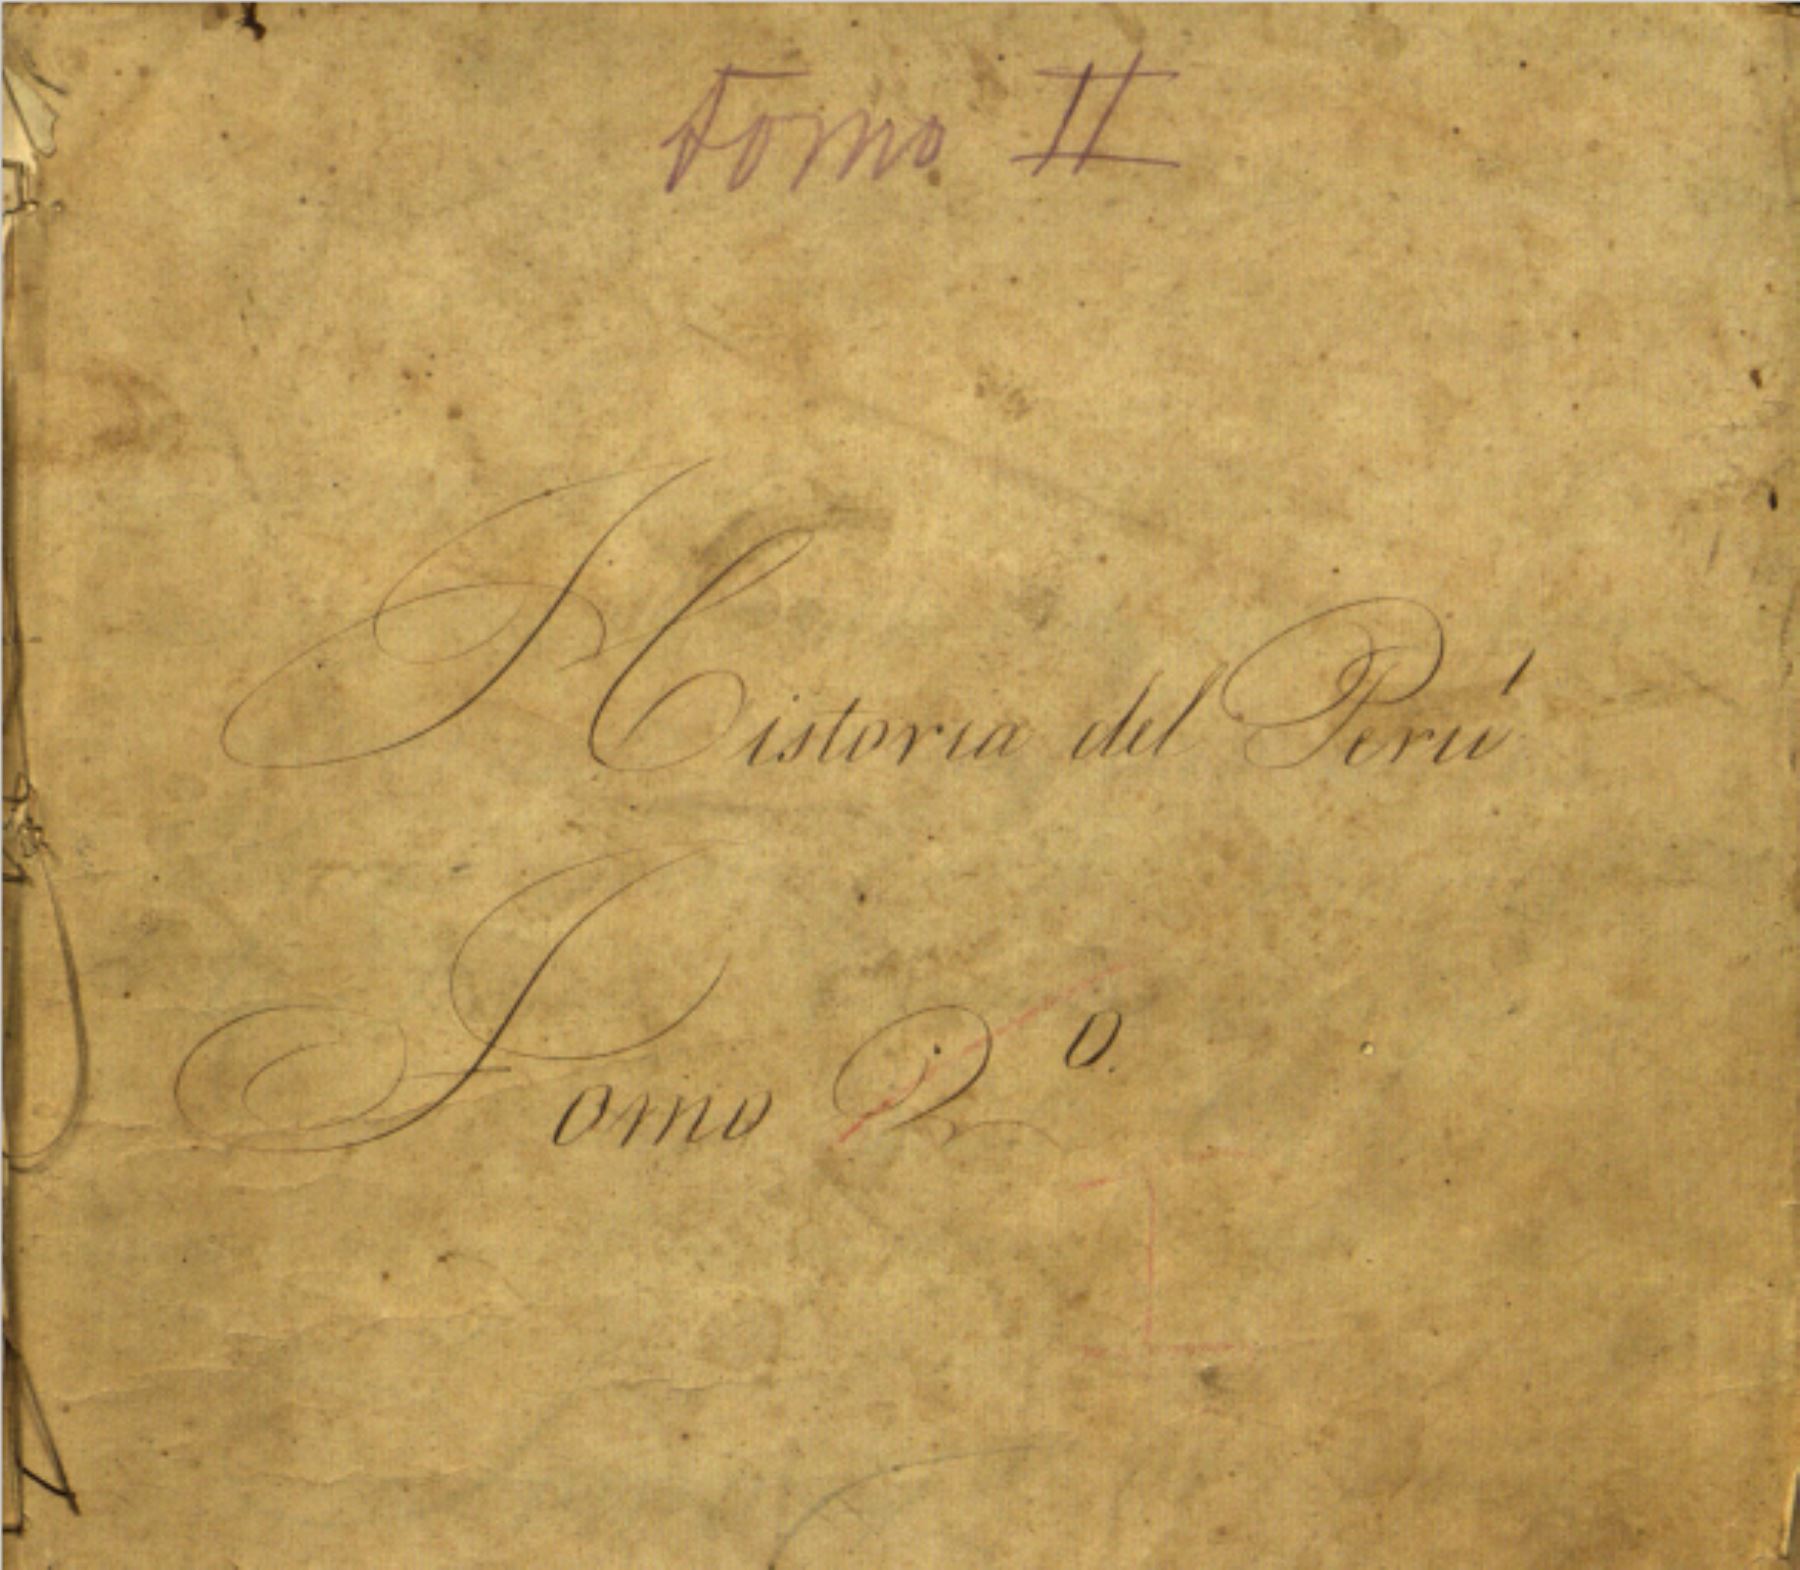 Los 13 tomos de la obra manuscrita “Historia del Perú” [1848] se encuentran disponibles al público de forma gratuita, mediante la plataforma BNP Digital. Para acceder a esta colección solo es necesario ingresar al siguiente enlace: https://bibliotecadigital.bnp.gob.pe/portal-bnp-web/#/.